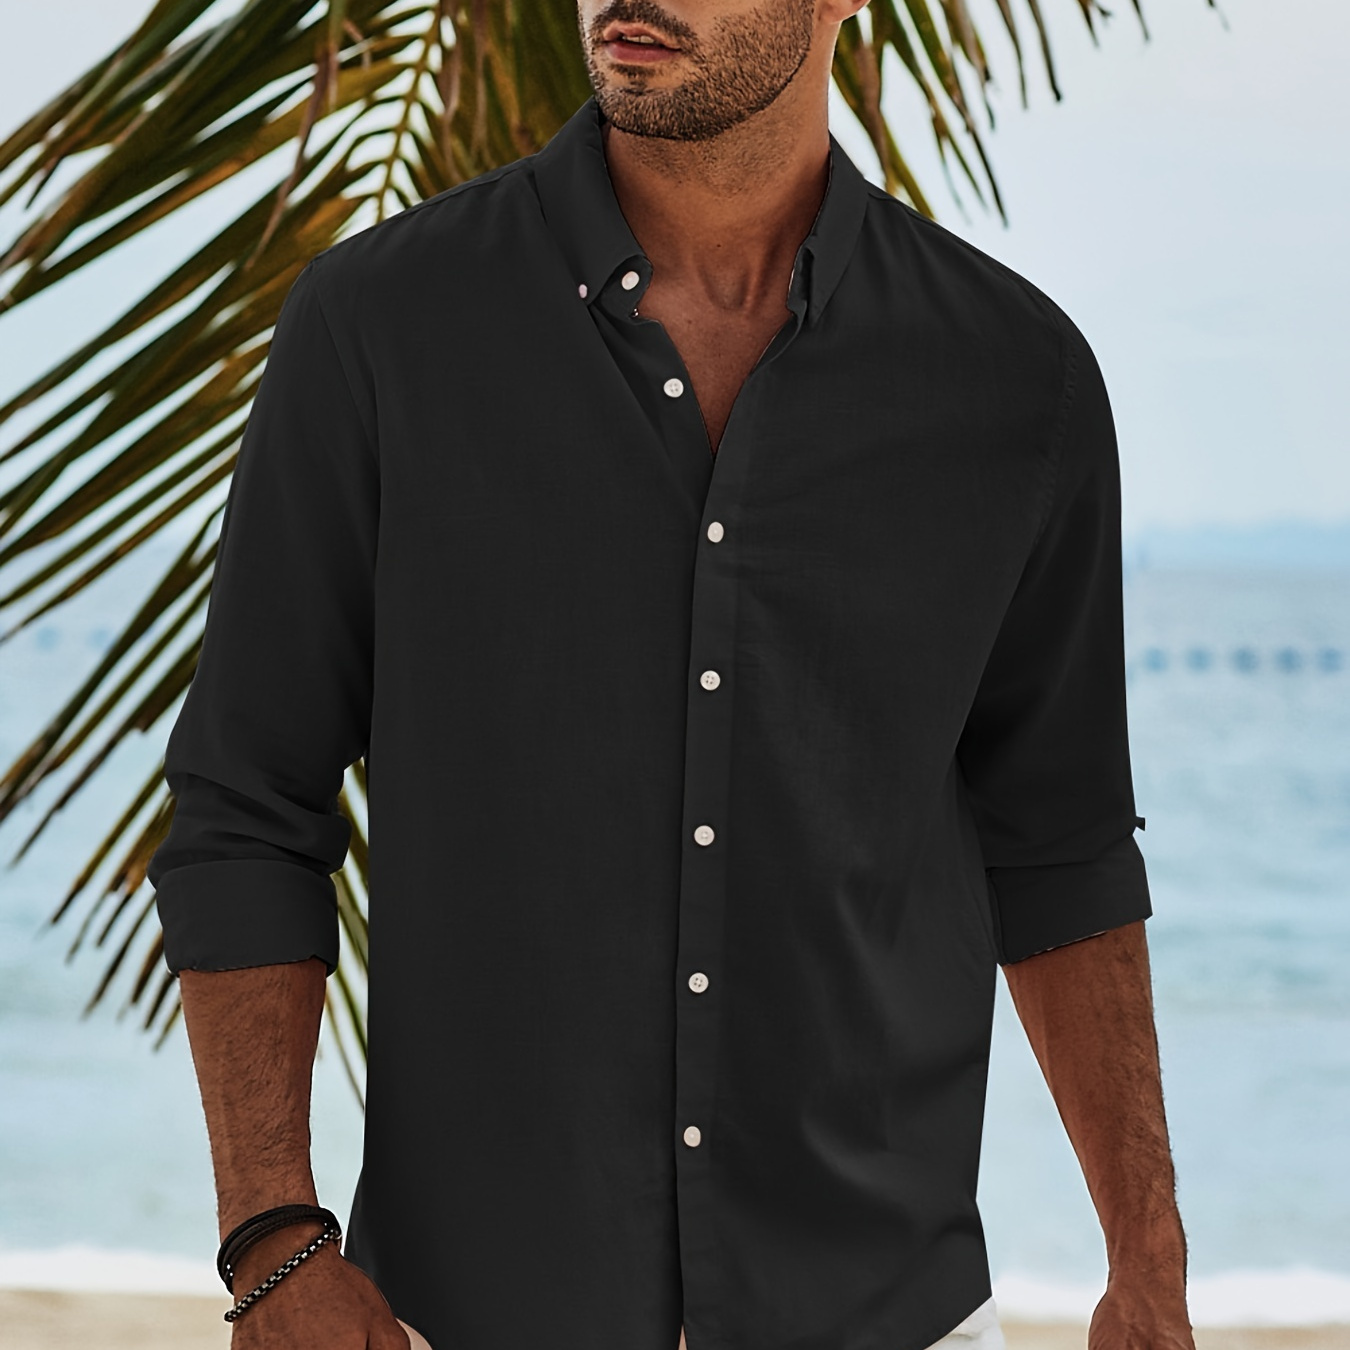 Men's Button-Up Shirts, Long-Sleeve + Short-Sleeve